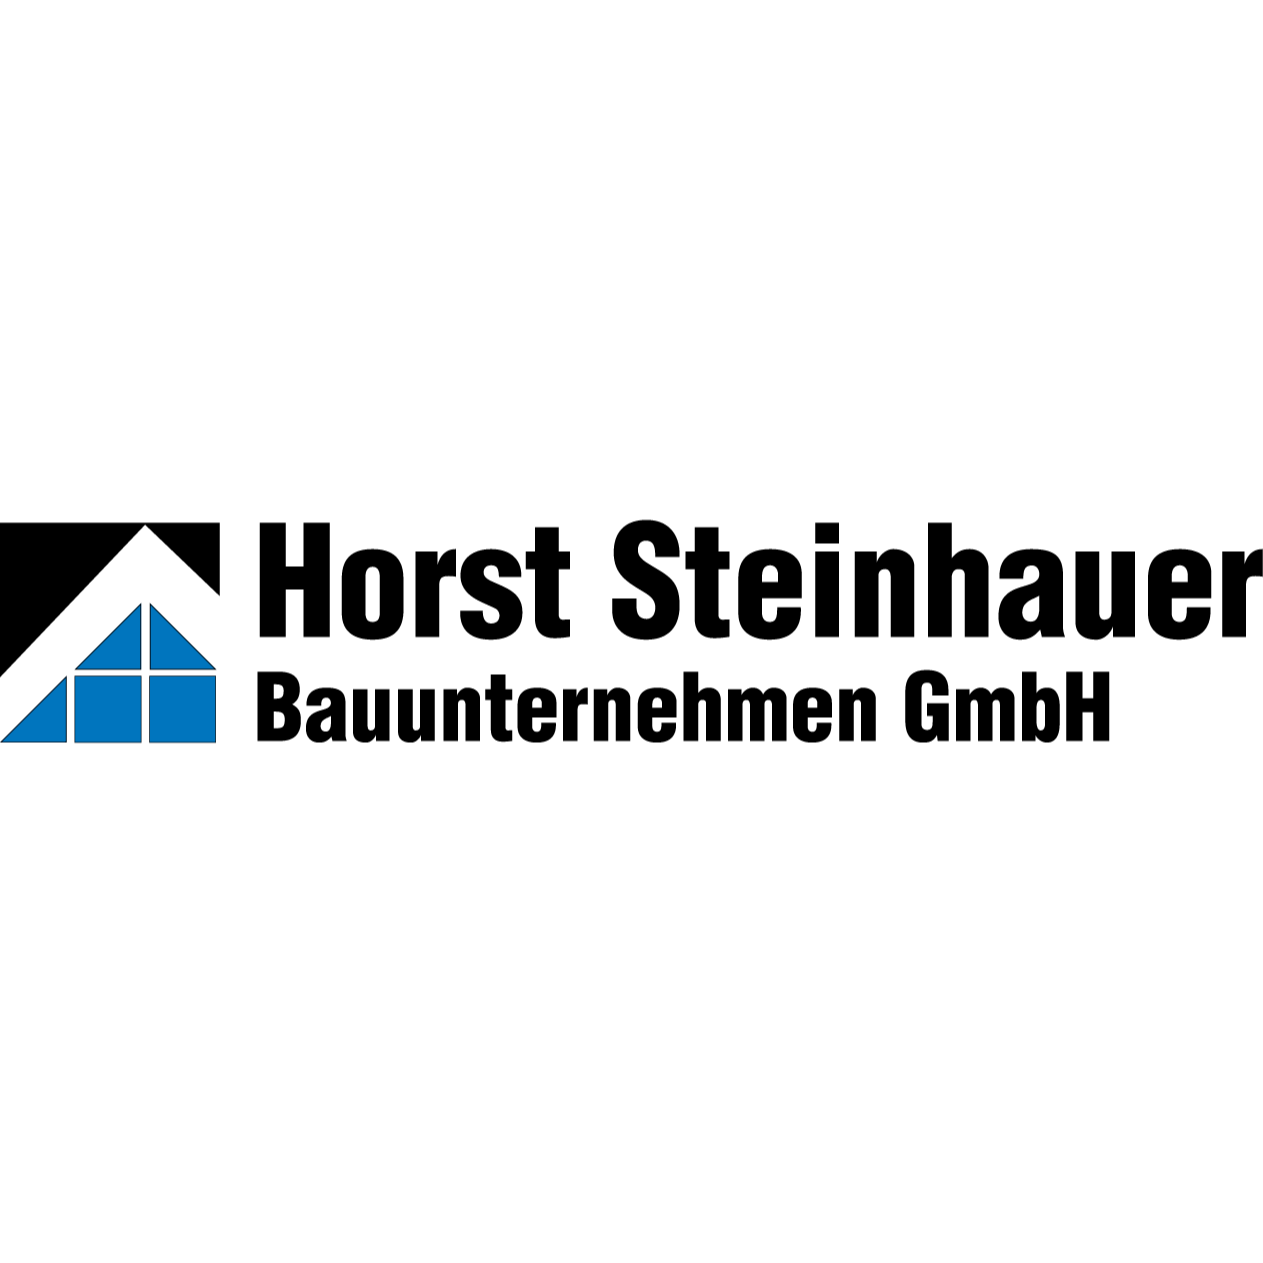 Bild zu Horst Steinhauer Bauunternehmen GmbH in Bad Nauheim